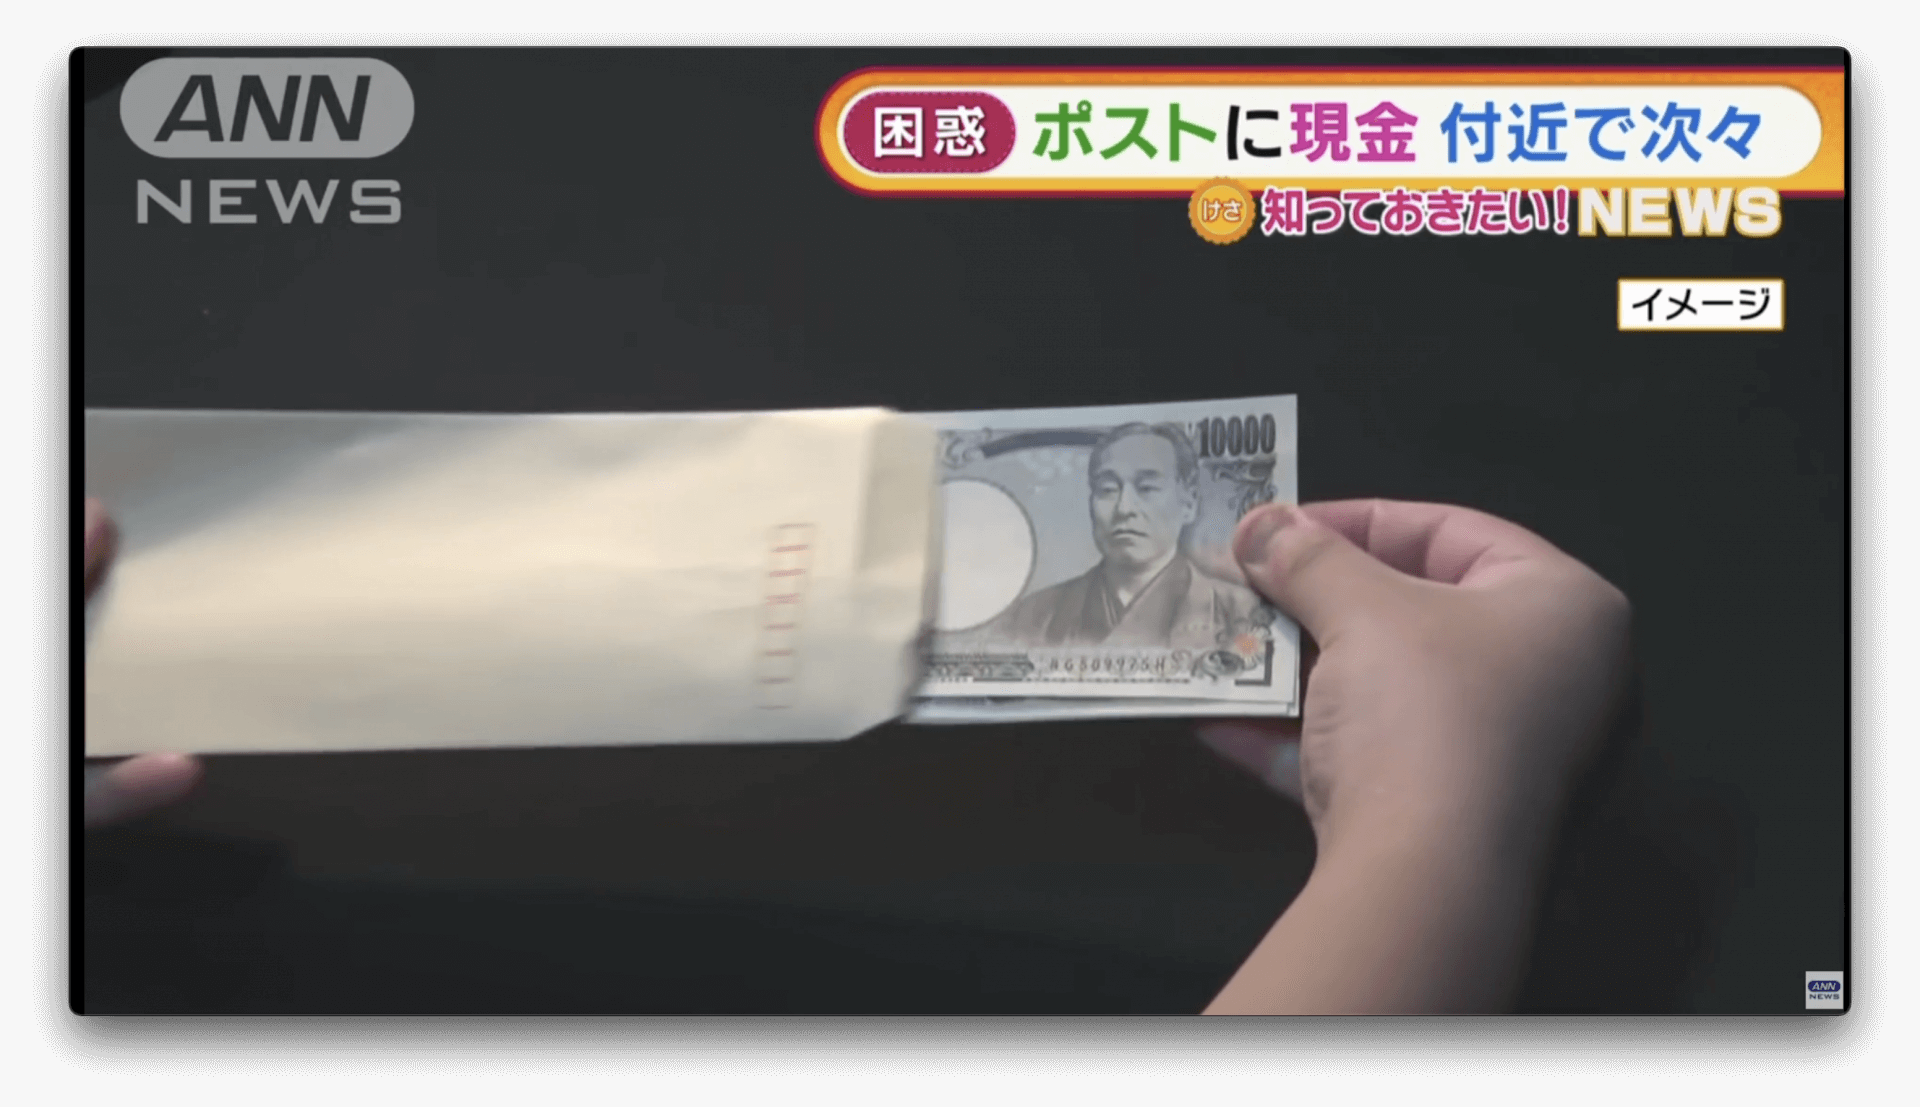 “Dinheiro misterioso” é recebido pelo correio no Japão